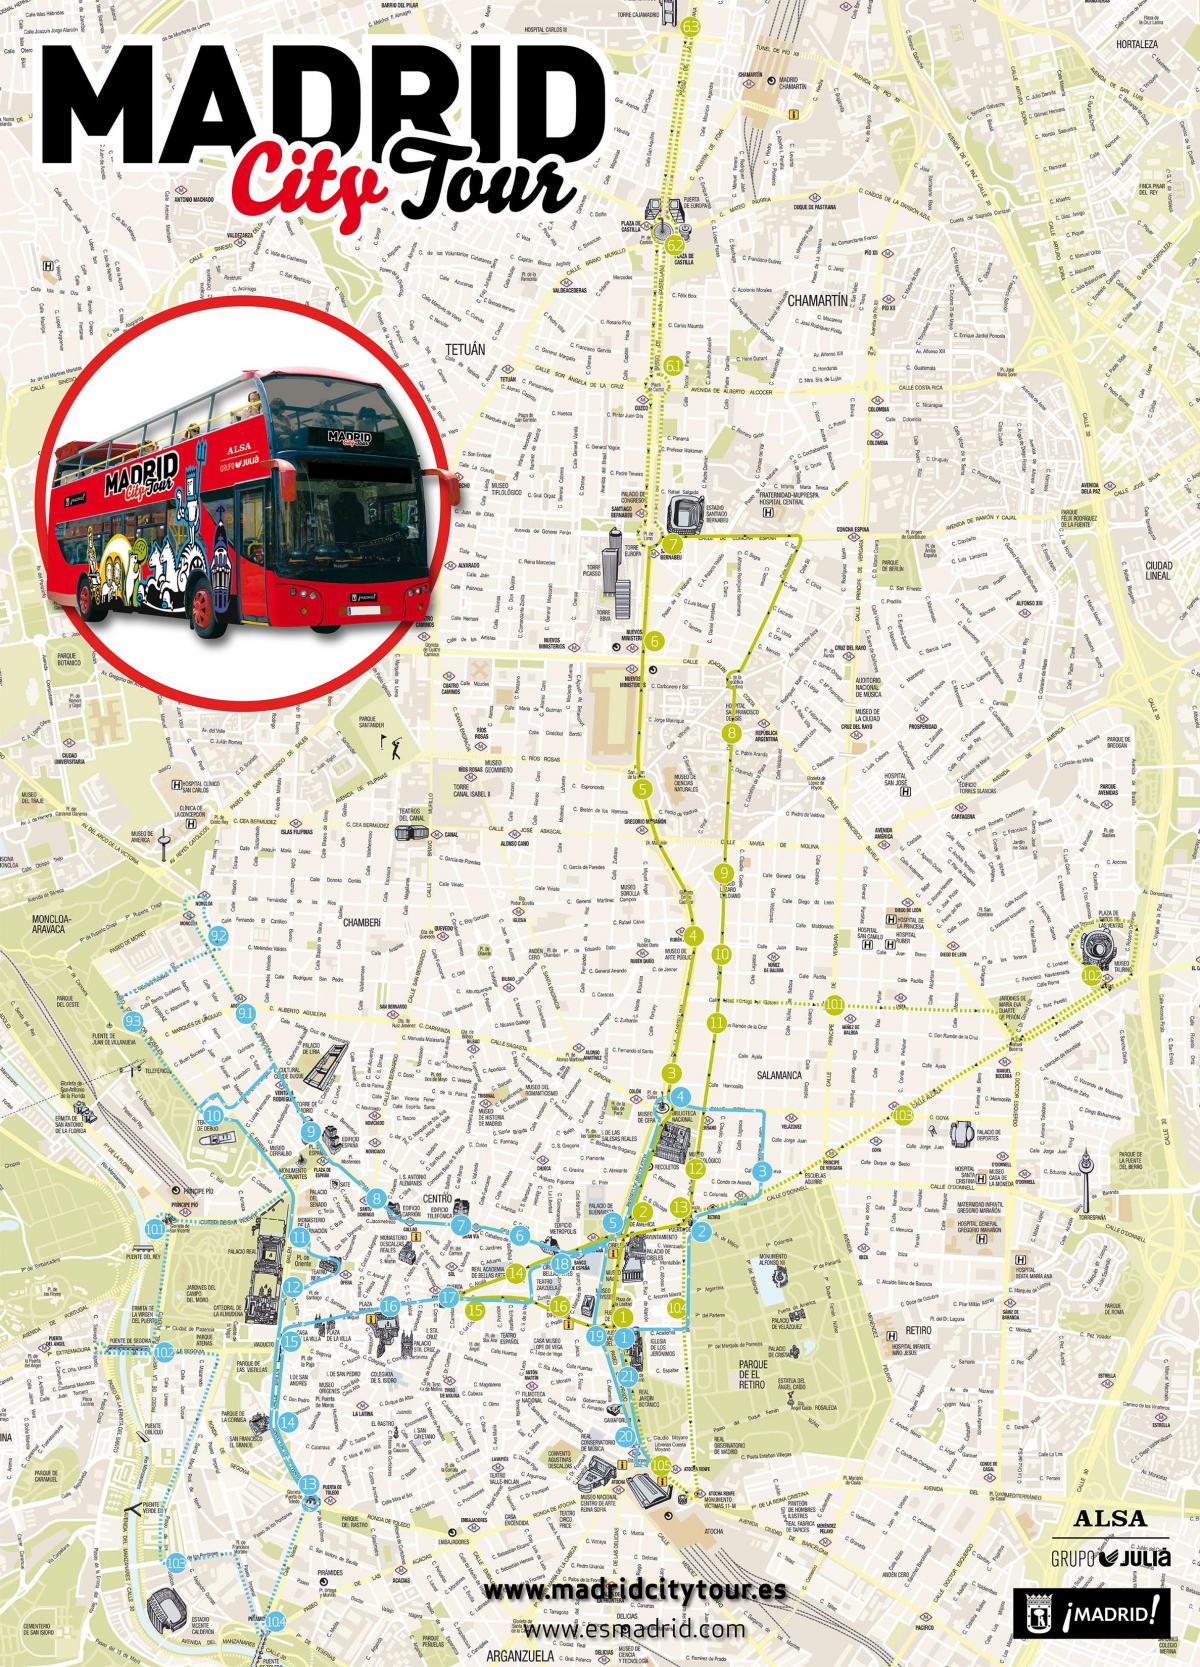 Madrido miesto autobusu kelionių žemėlapyje